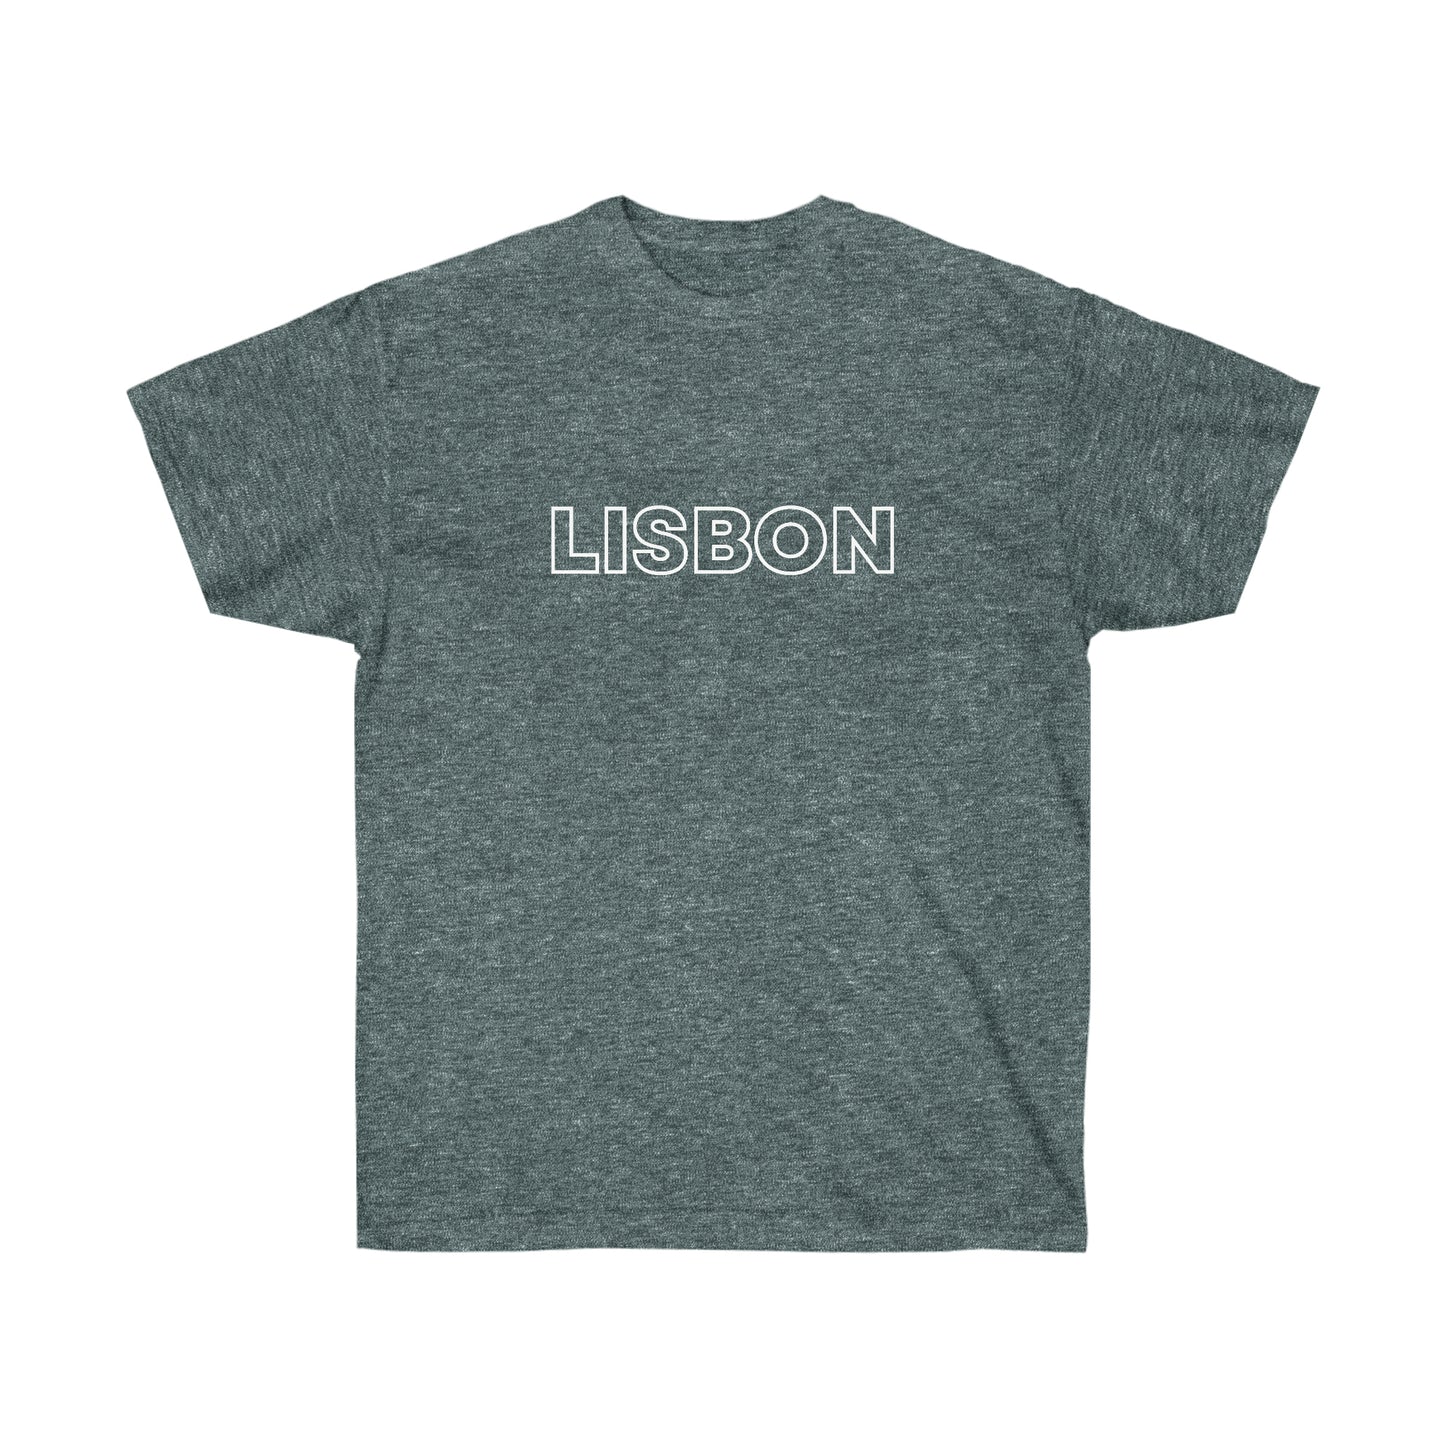 LISBON - Unisex Ultra Cotton Tee